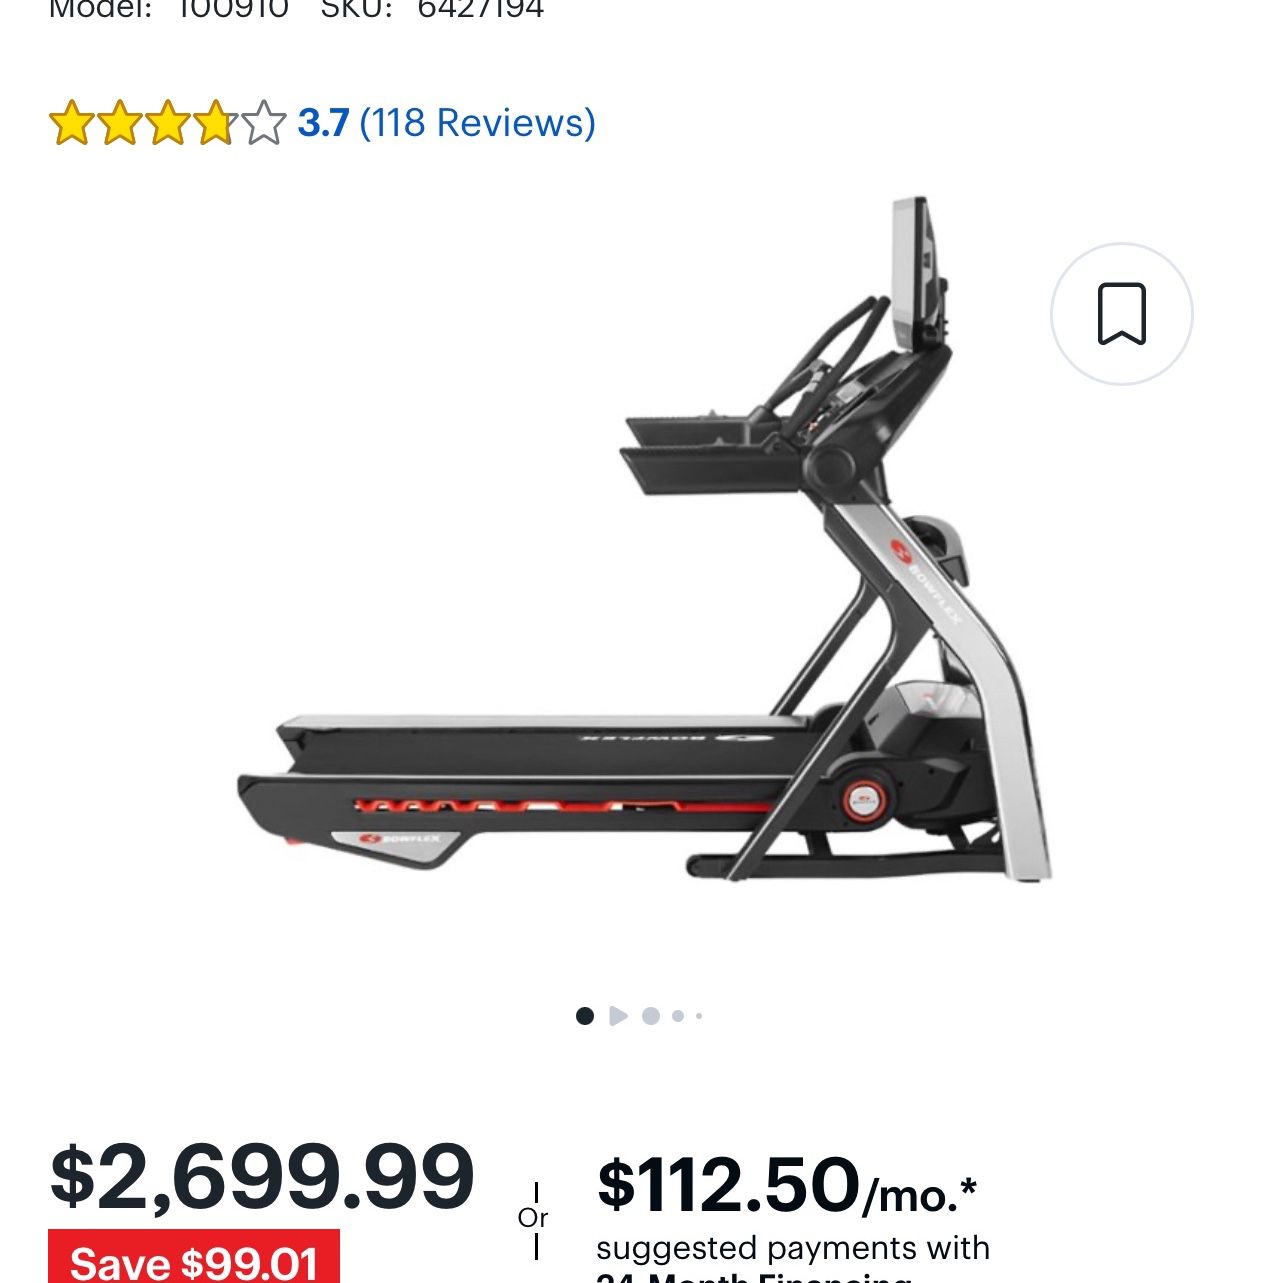 Bowflex 22 Treadmill